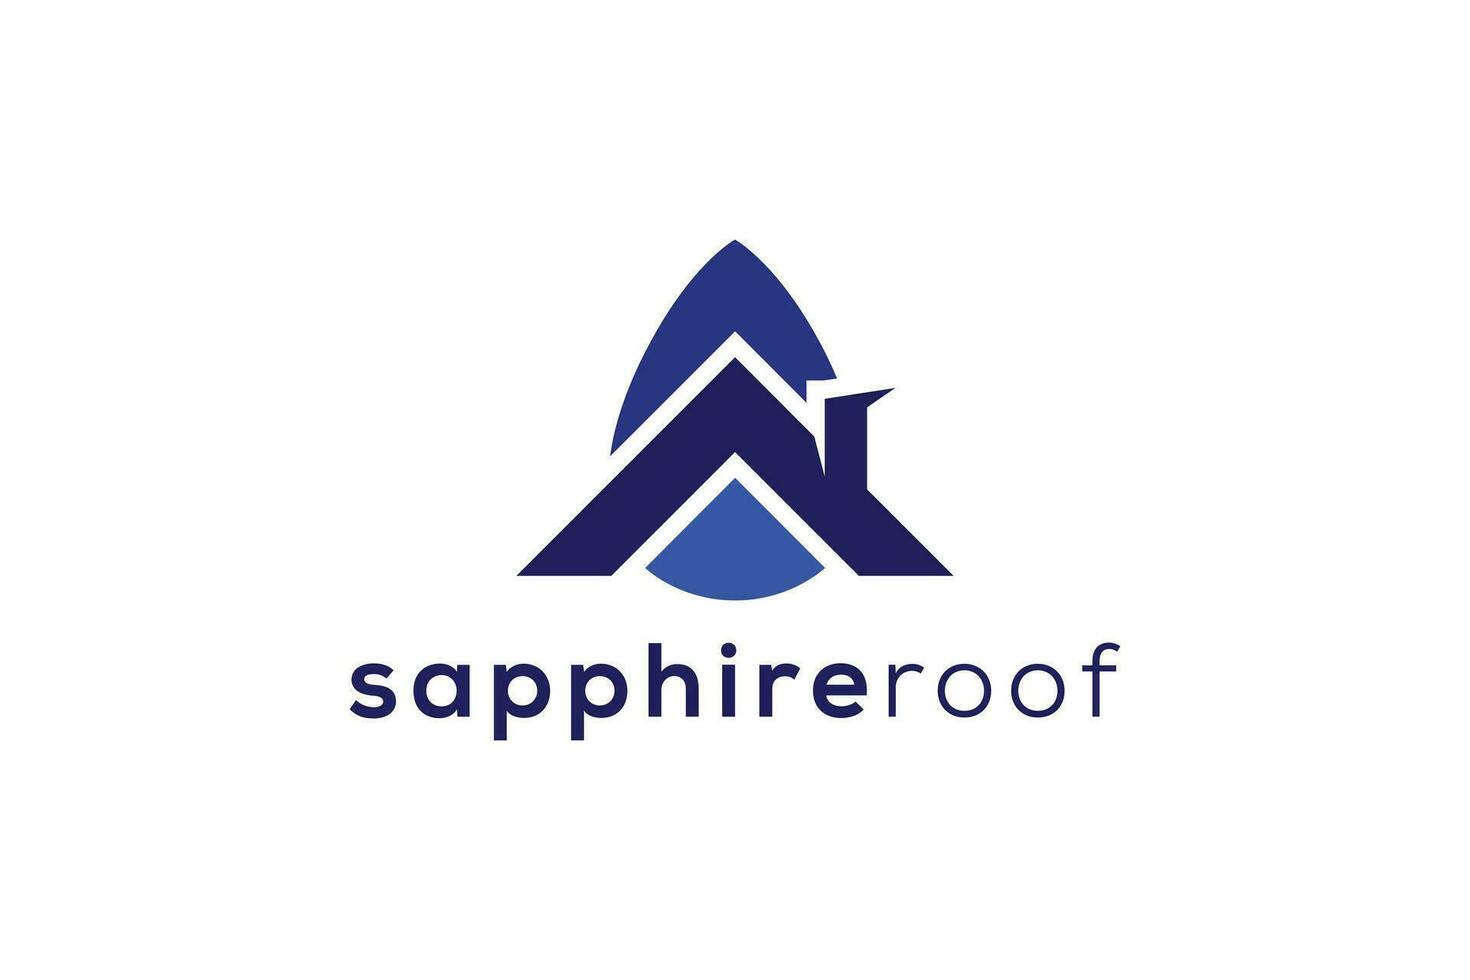 Saphir Juwel Stein und Dach echt Nachlass Logo Design Vektor Vorlage